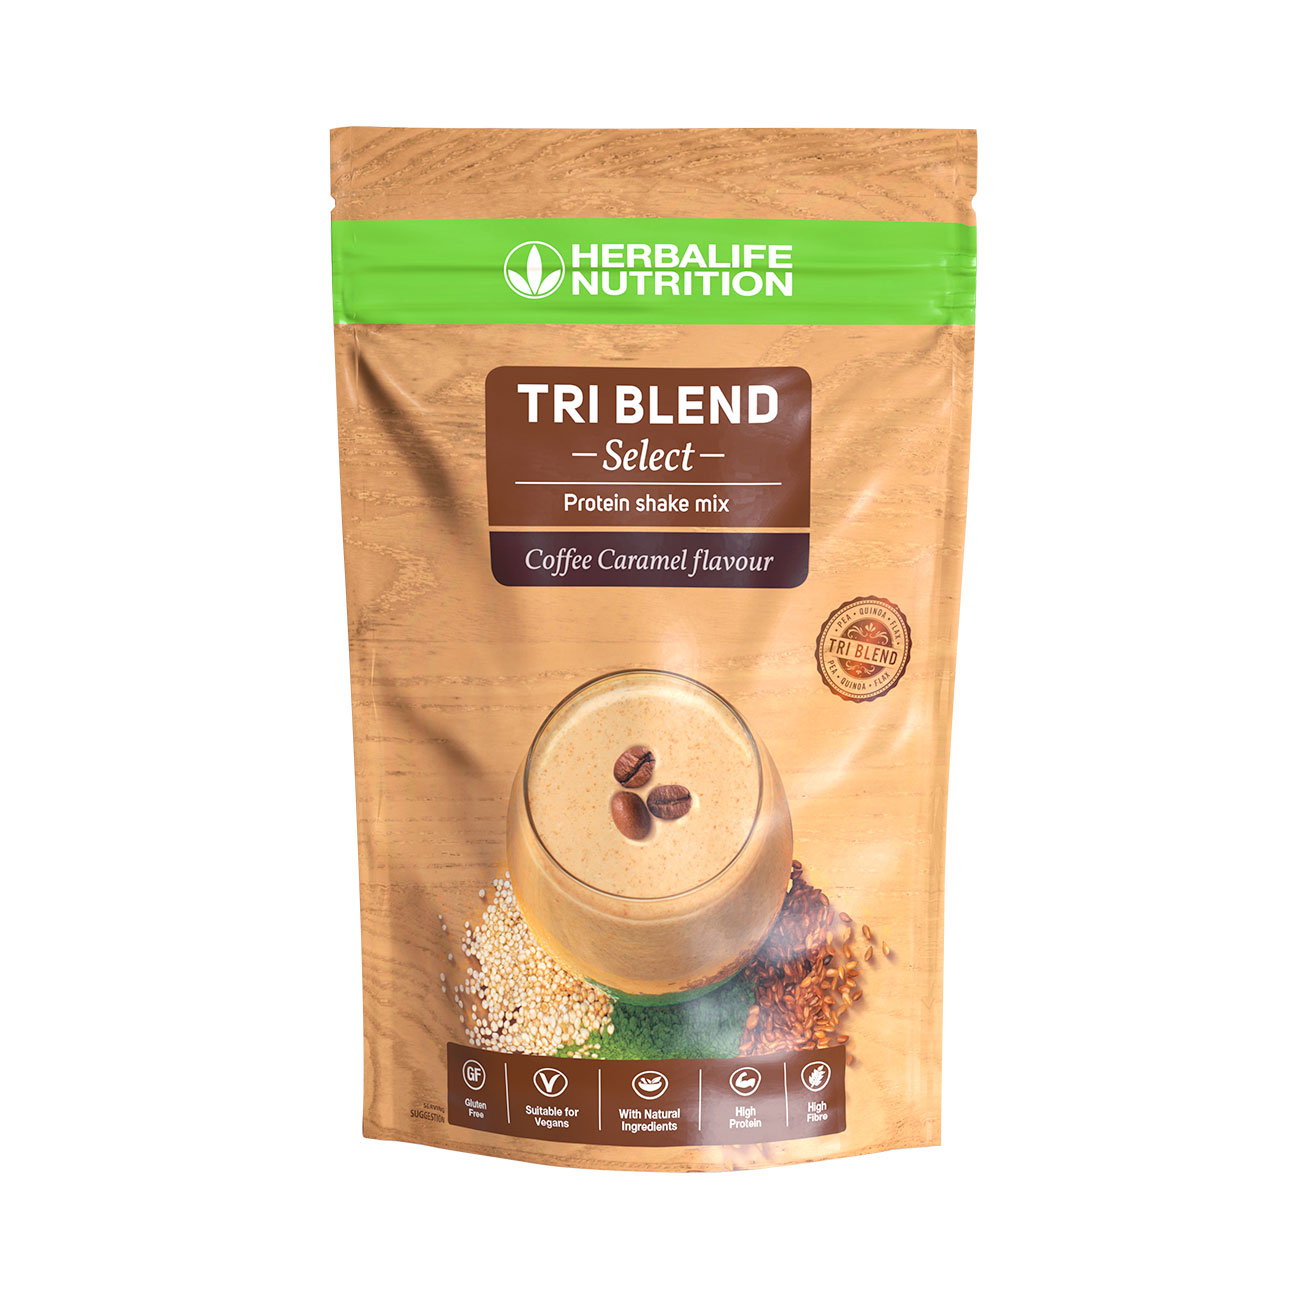 Tri Blend Select Cafe Caramel – shake proteine a base de proteines 100  vegetales : avec du pois, du quinoa et des graines de lin. Ingredients vegan naturels.